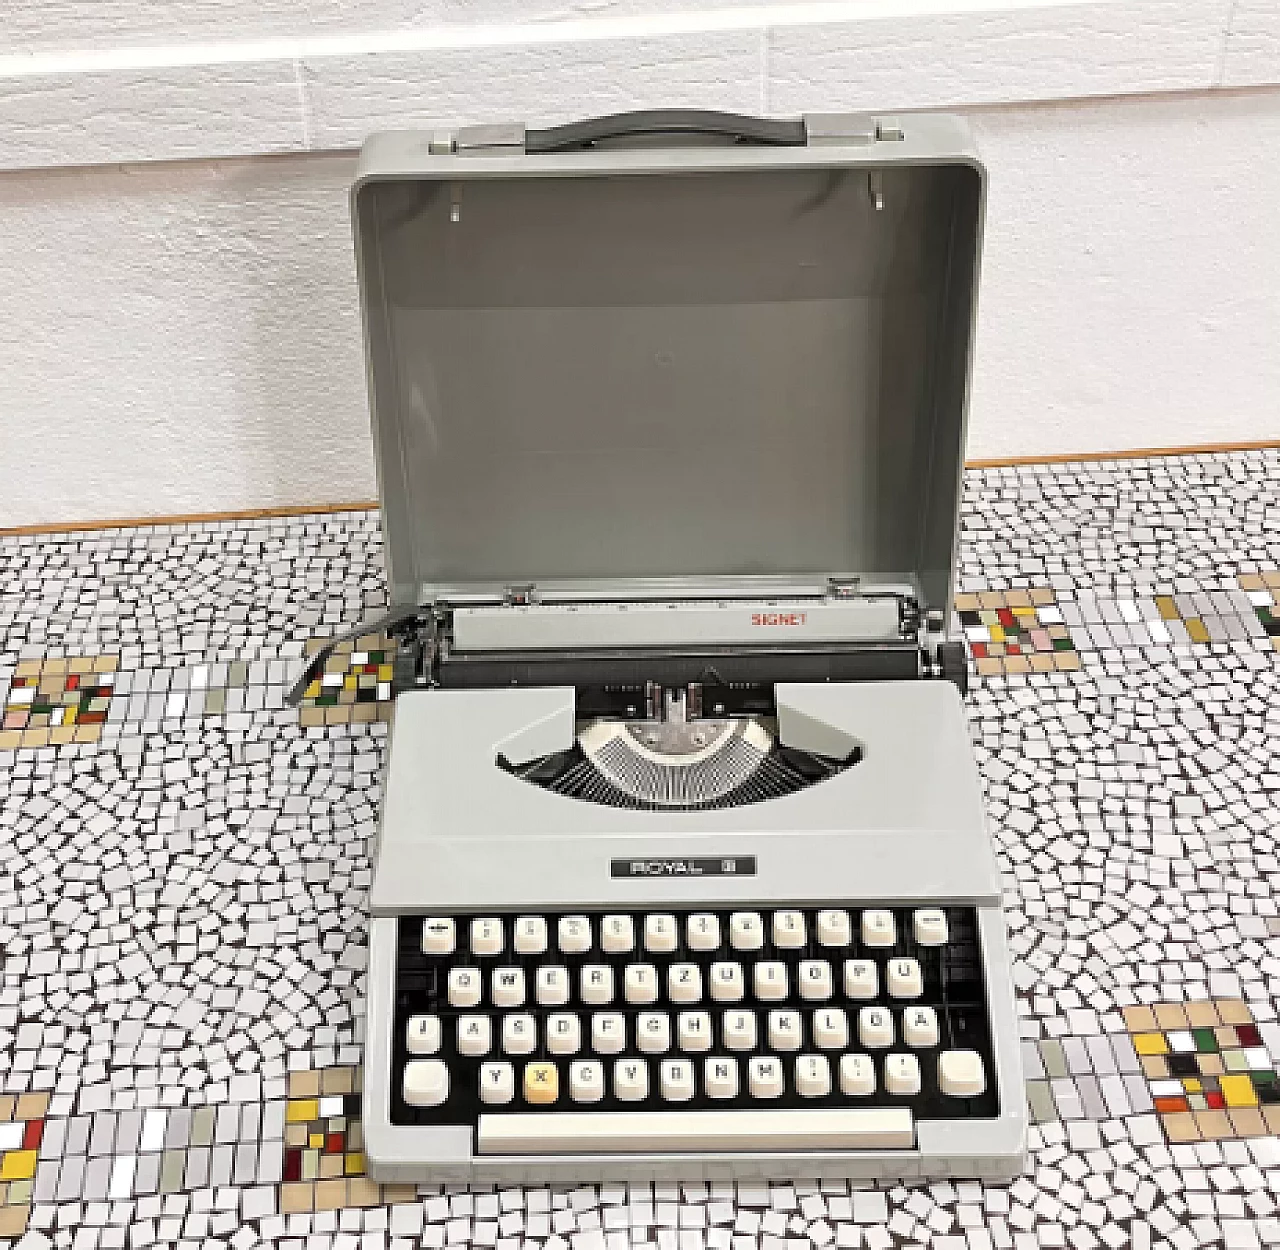 Japanese Royal Signet typewriter with case, 1970s 2